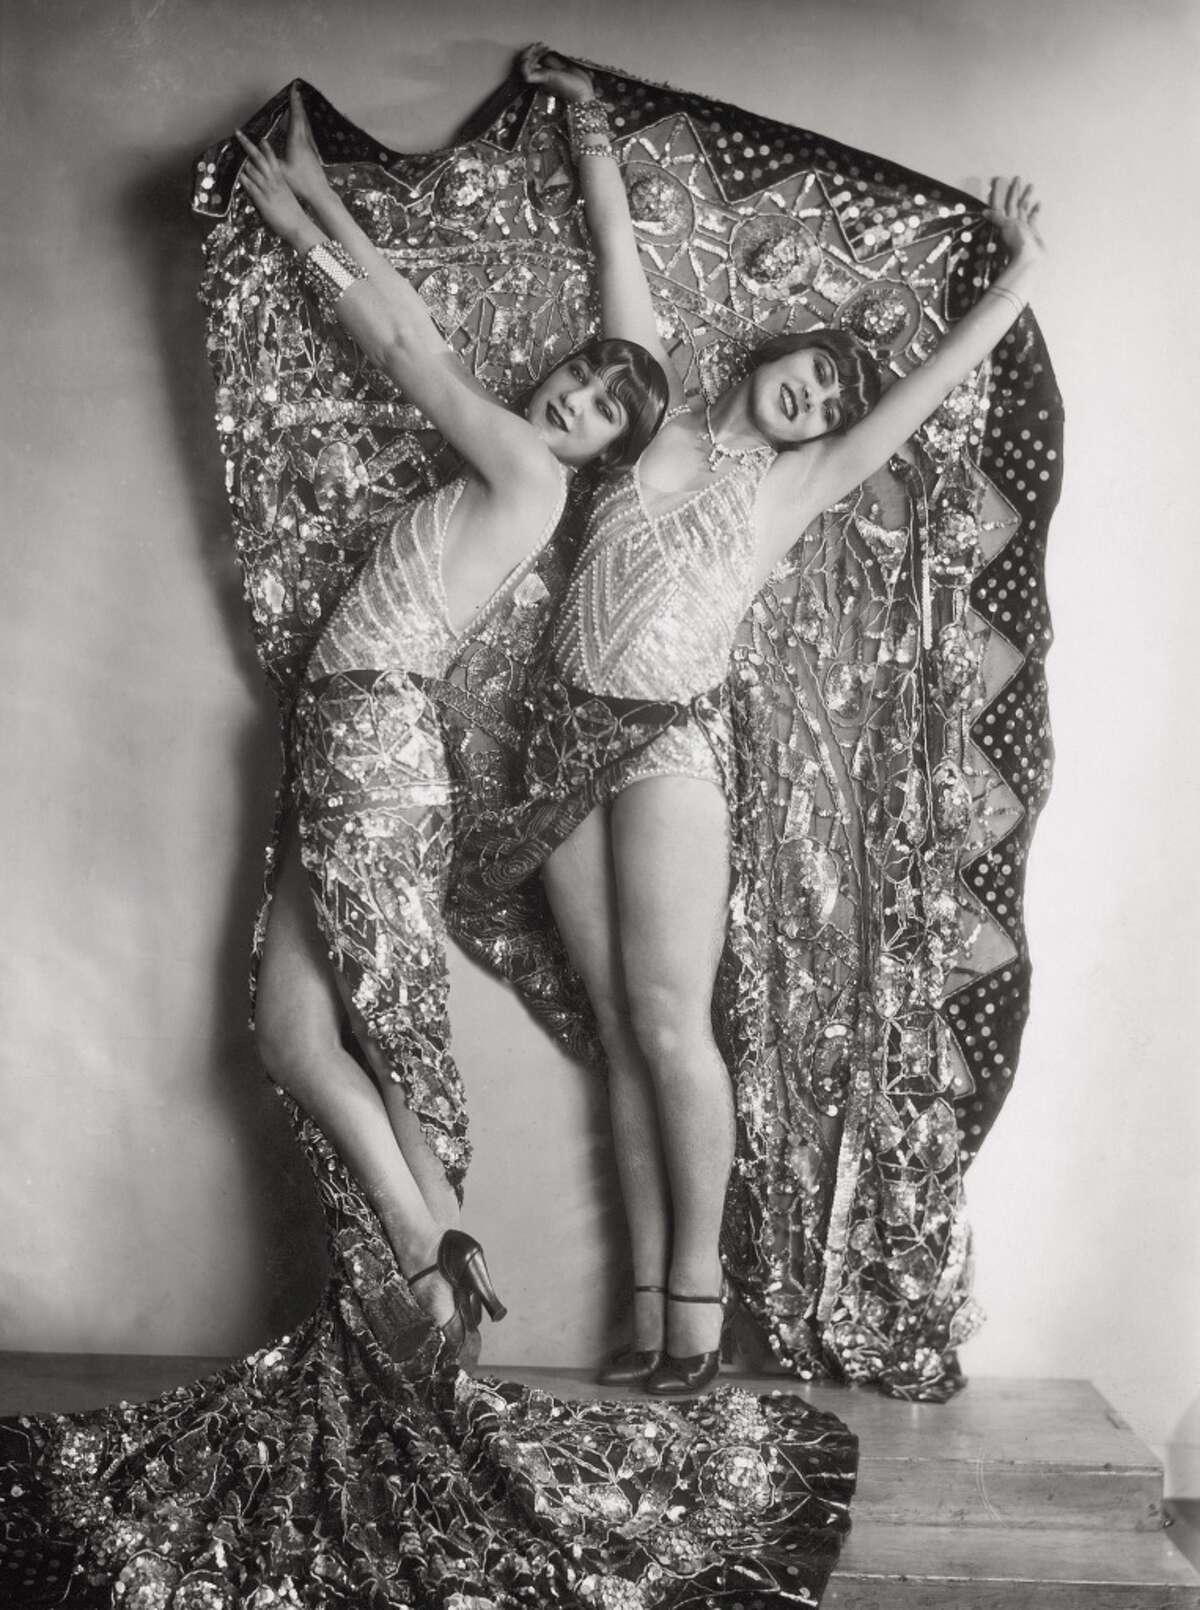 Chorus girls in the revue "Wien lacht wieder" in Vienna, circa 1929.